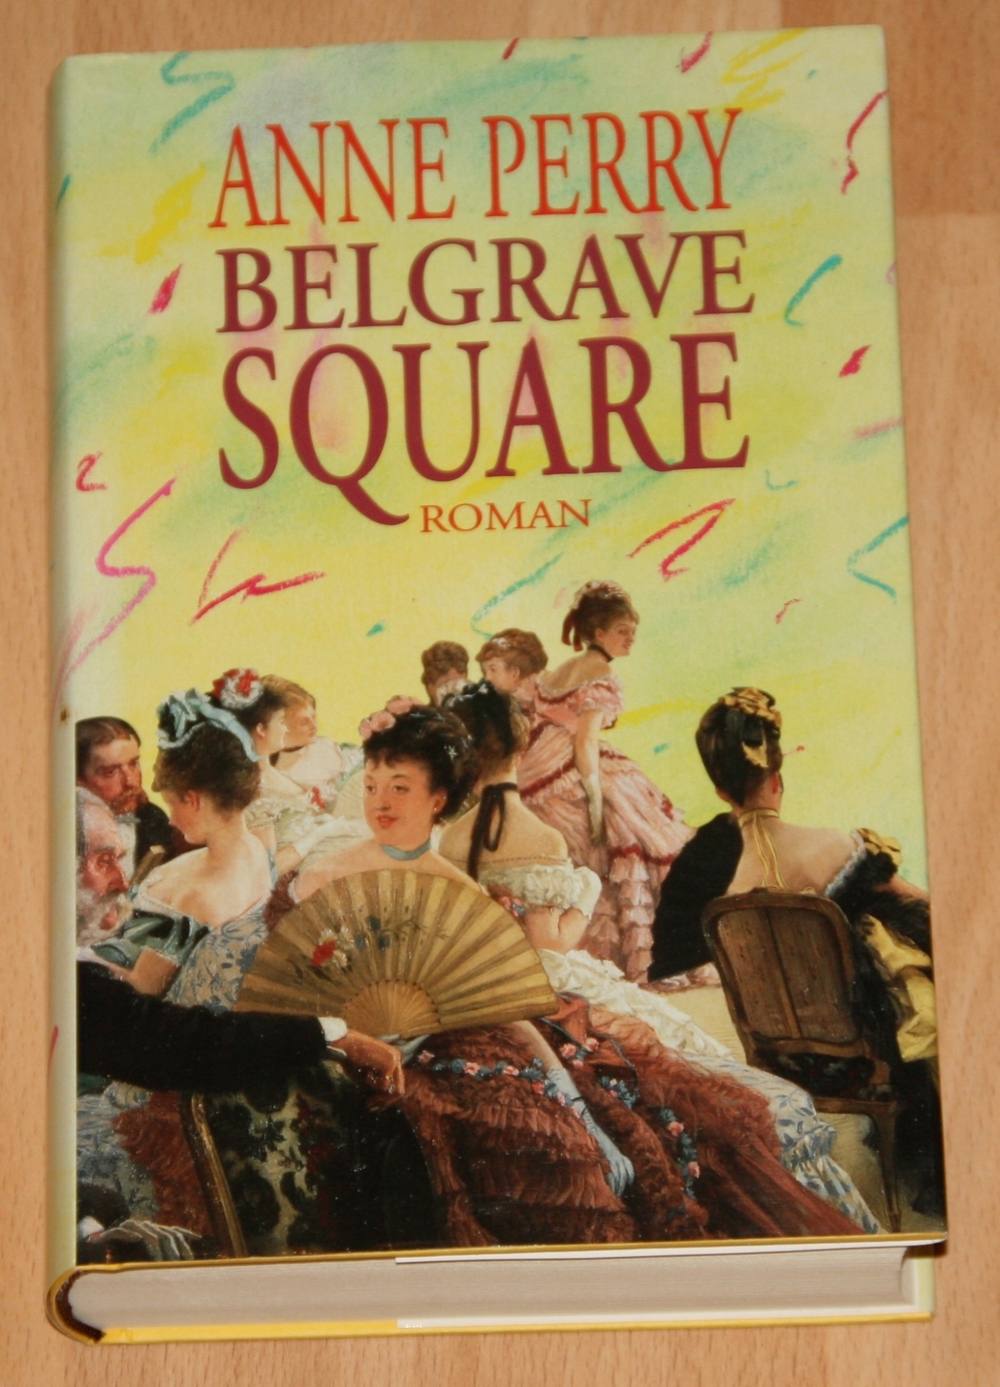 Buch "Belgrave Square" von Anne Perry - Krimi - mit Thomas Pitt